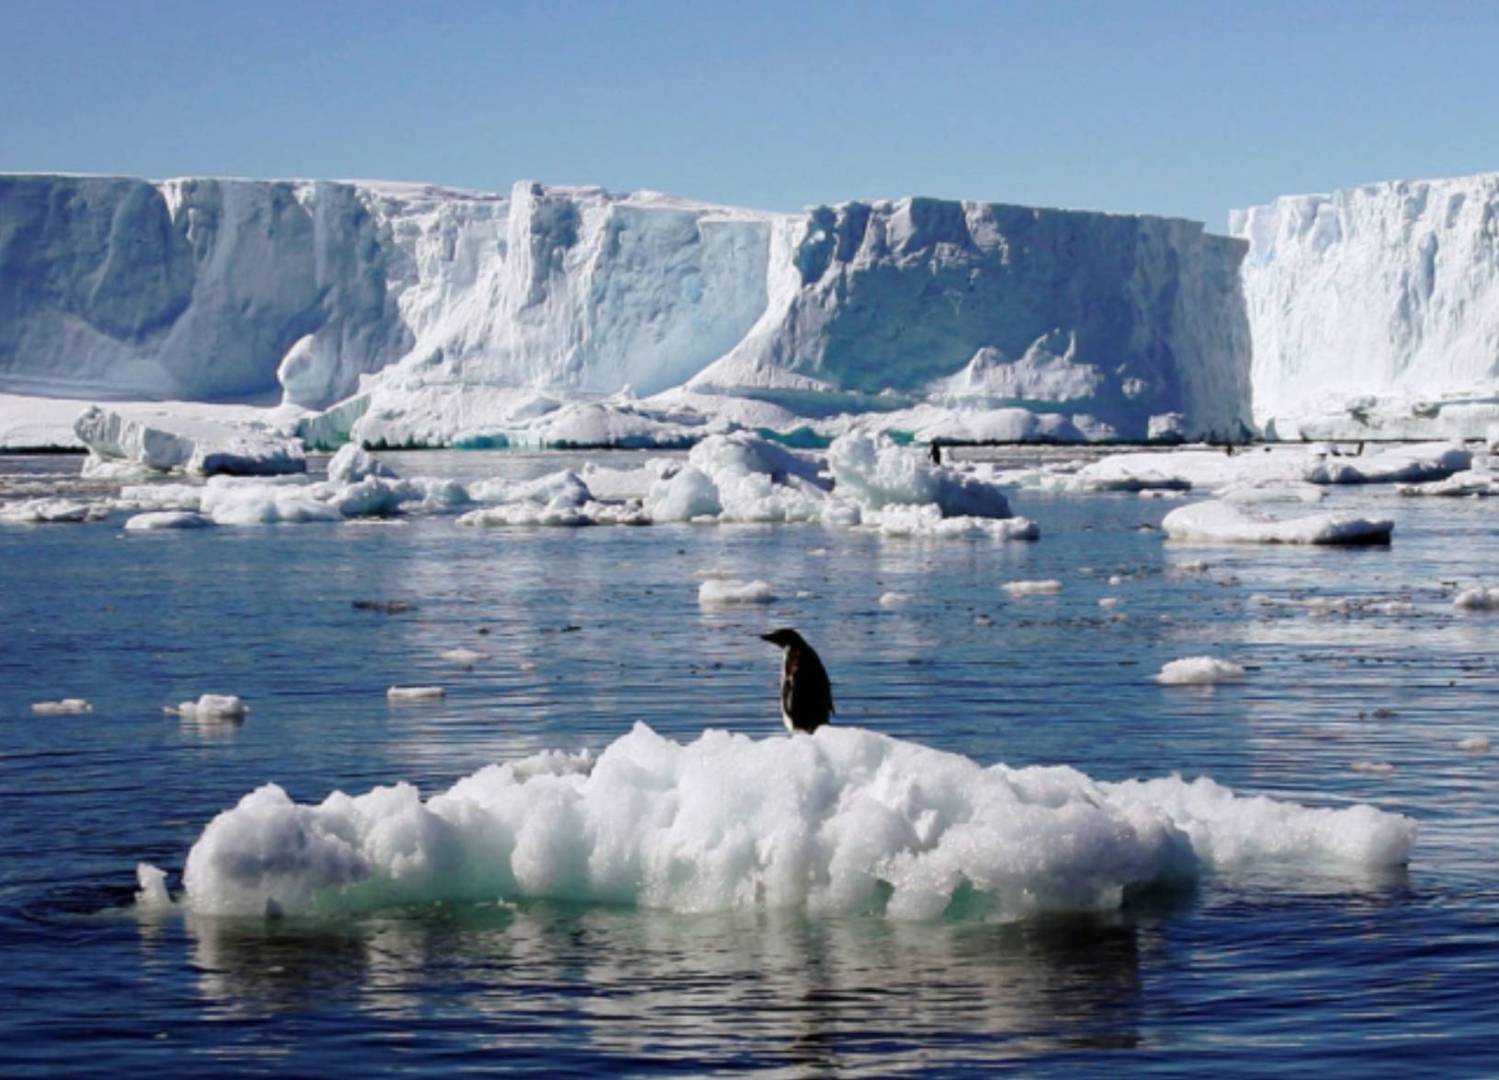 في علامة مثيرة للقلق ارتفاع درجة حرارة القارة القطبية الجنوبية أسرع بكثير من النماذج المتوقعة